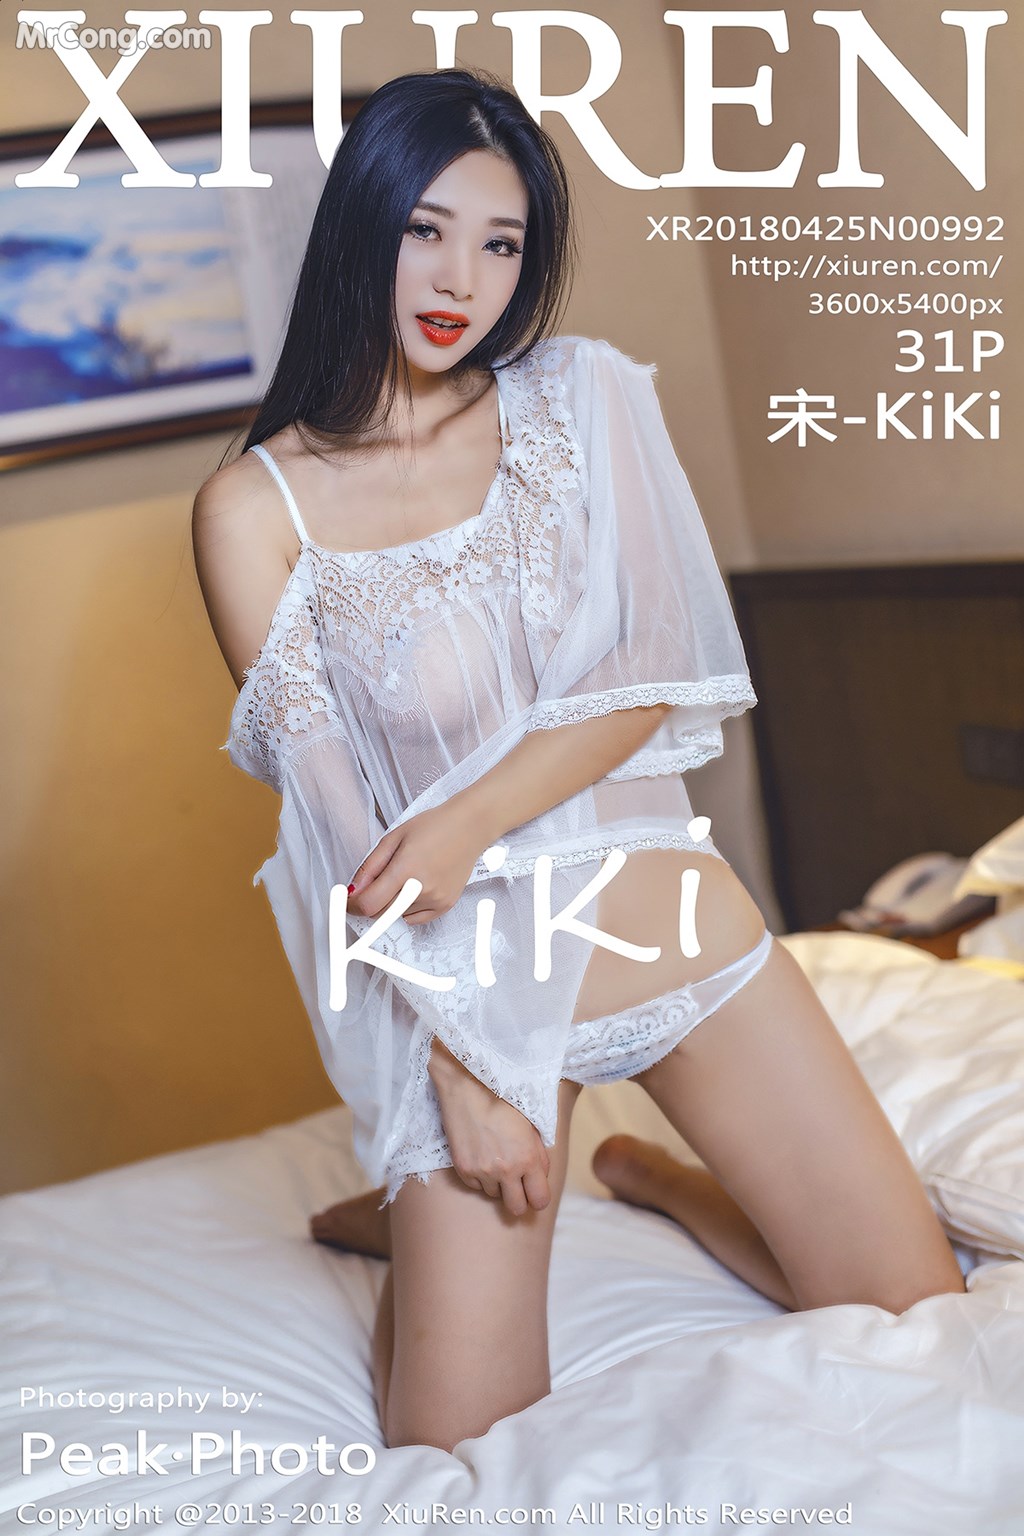 XIUREN No.992: Model 宋 -KiKi (32 photos)